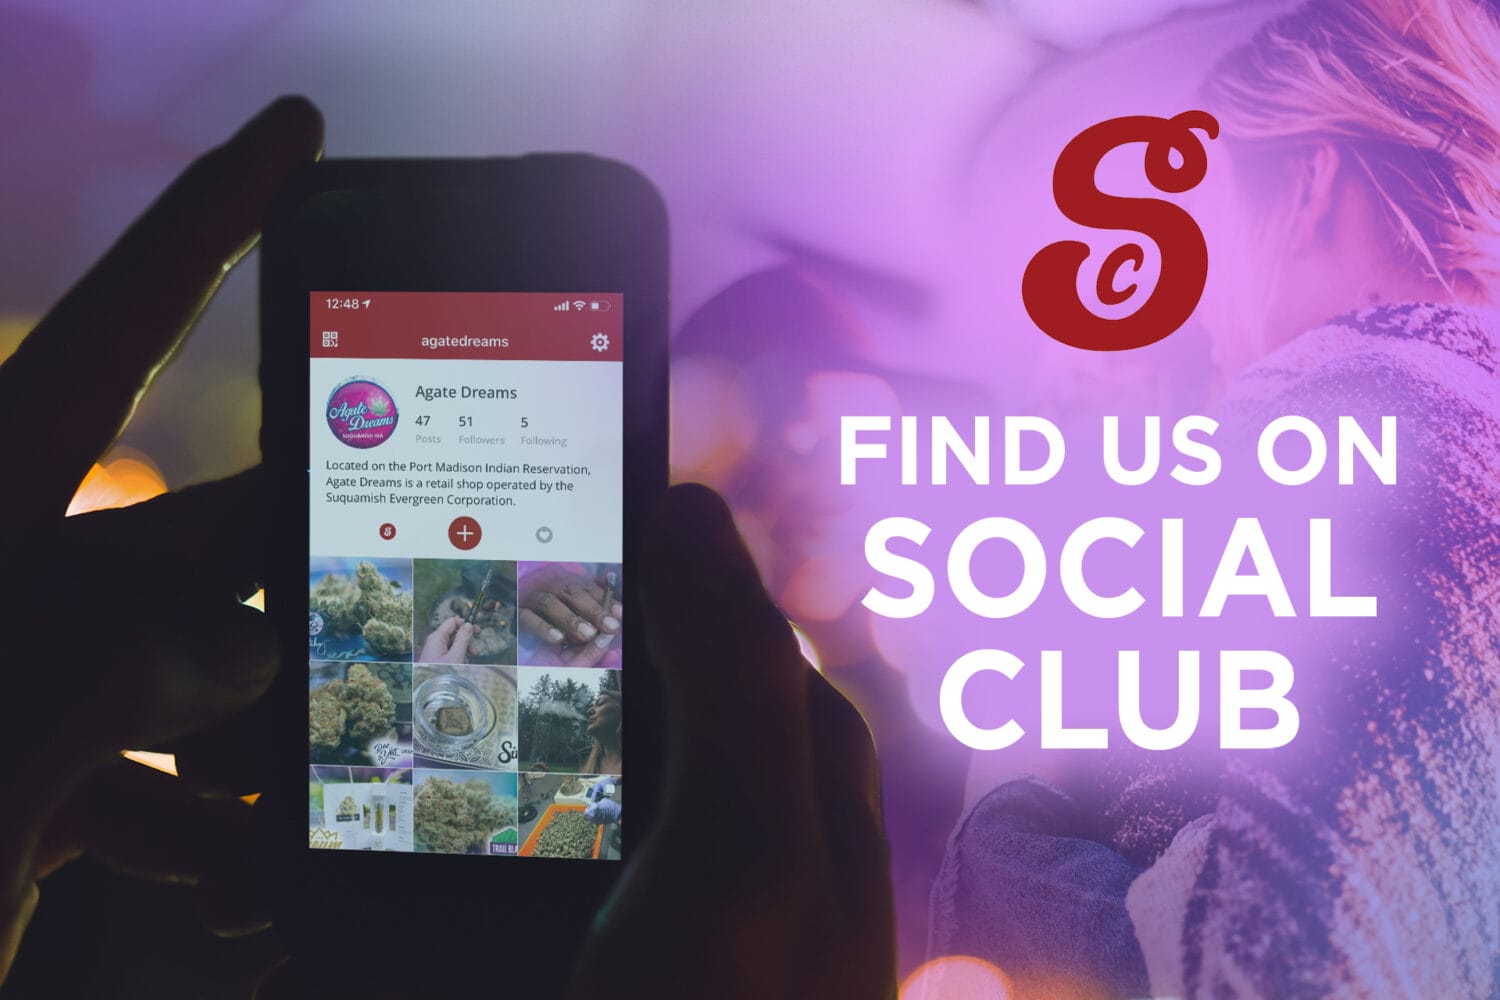 Find us on Social Club - Agate Dreams